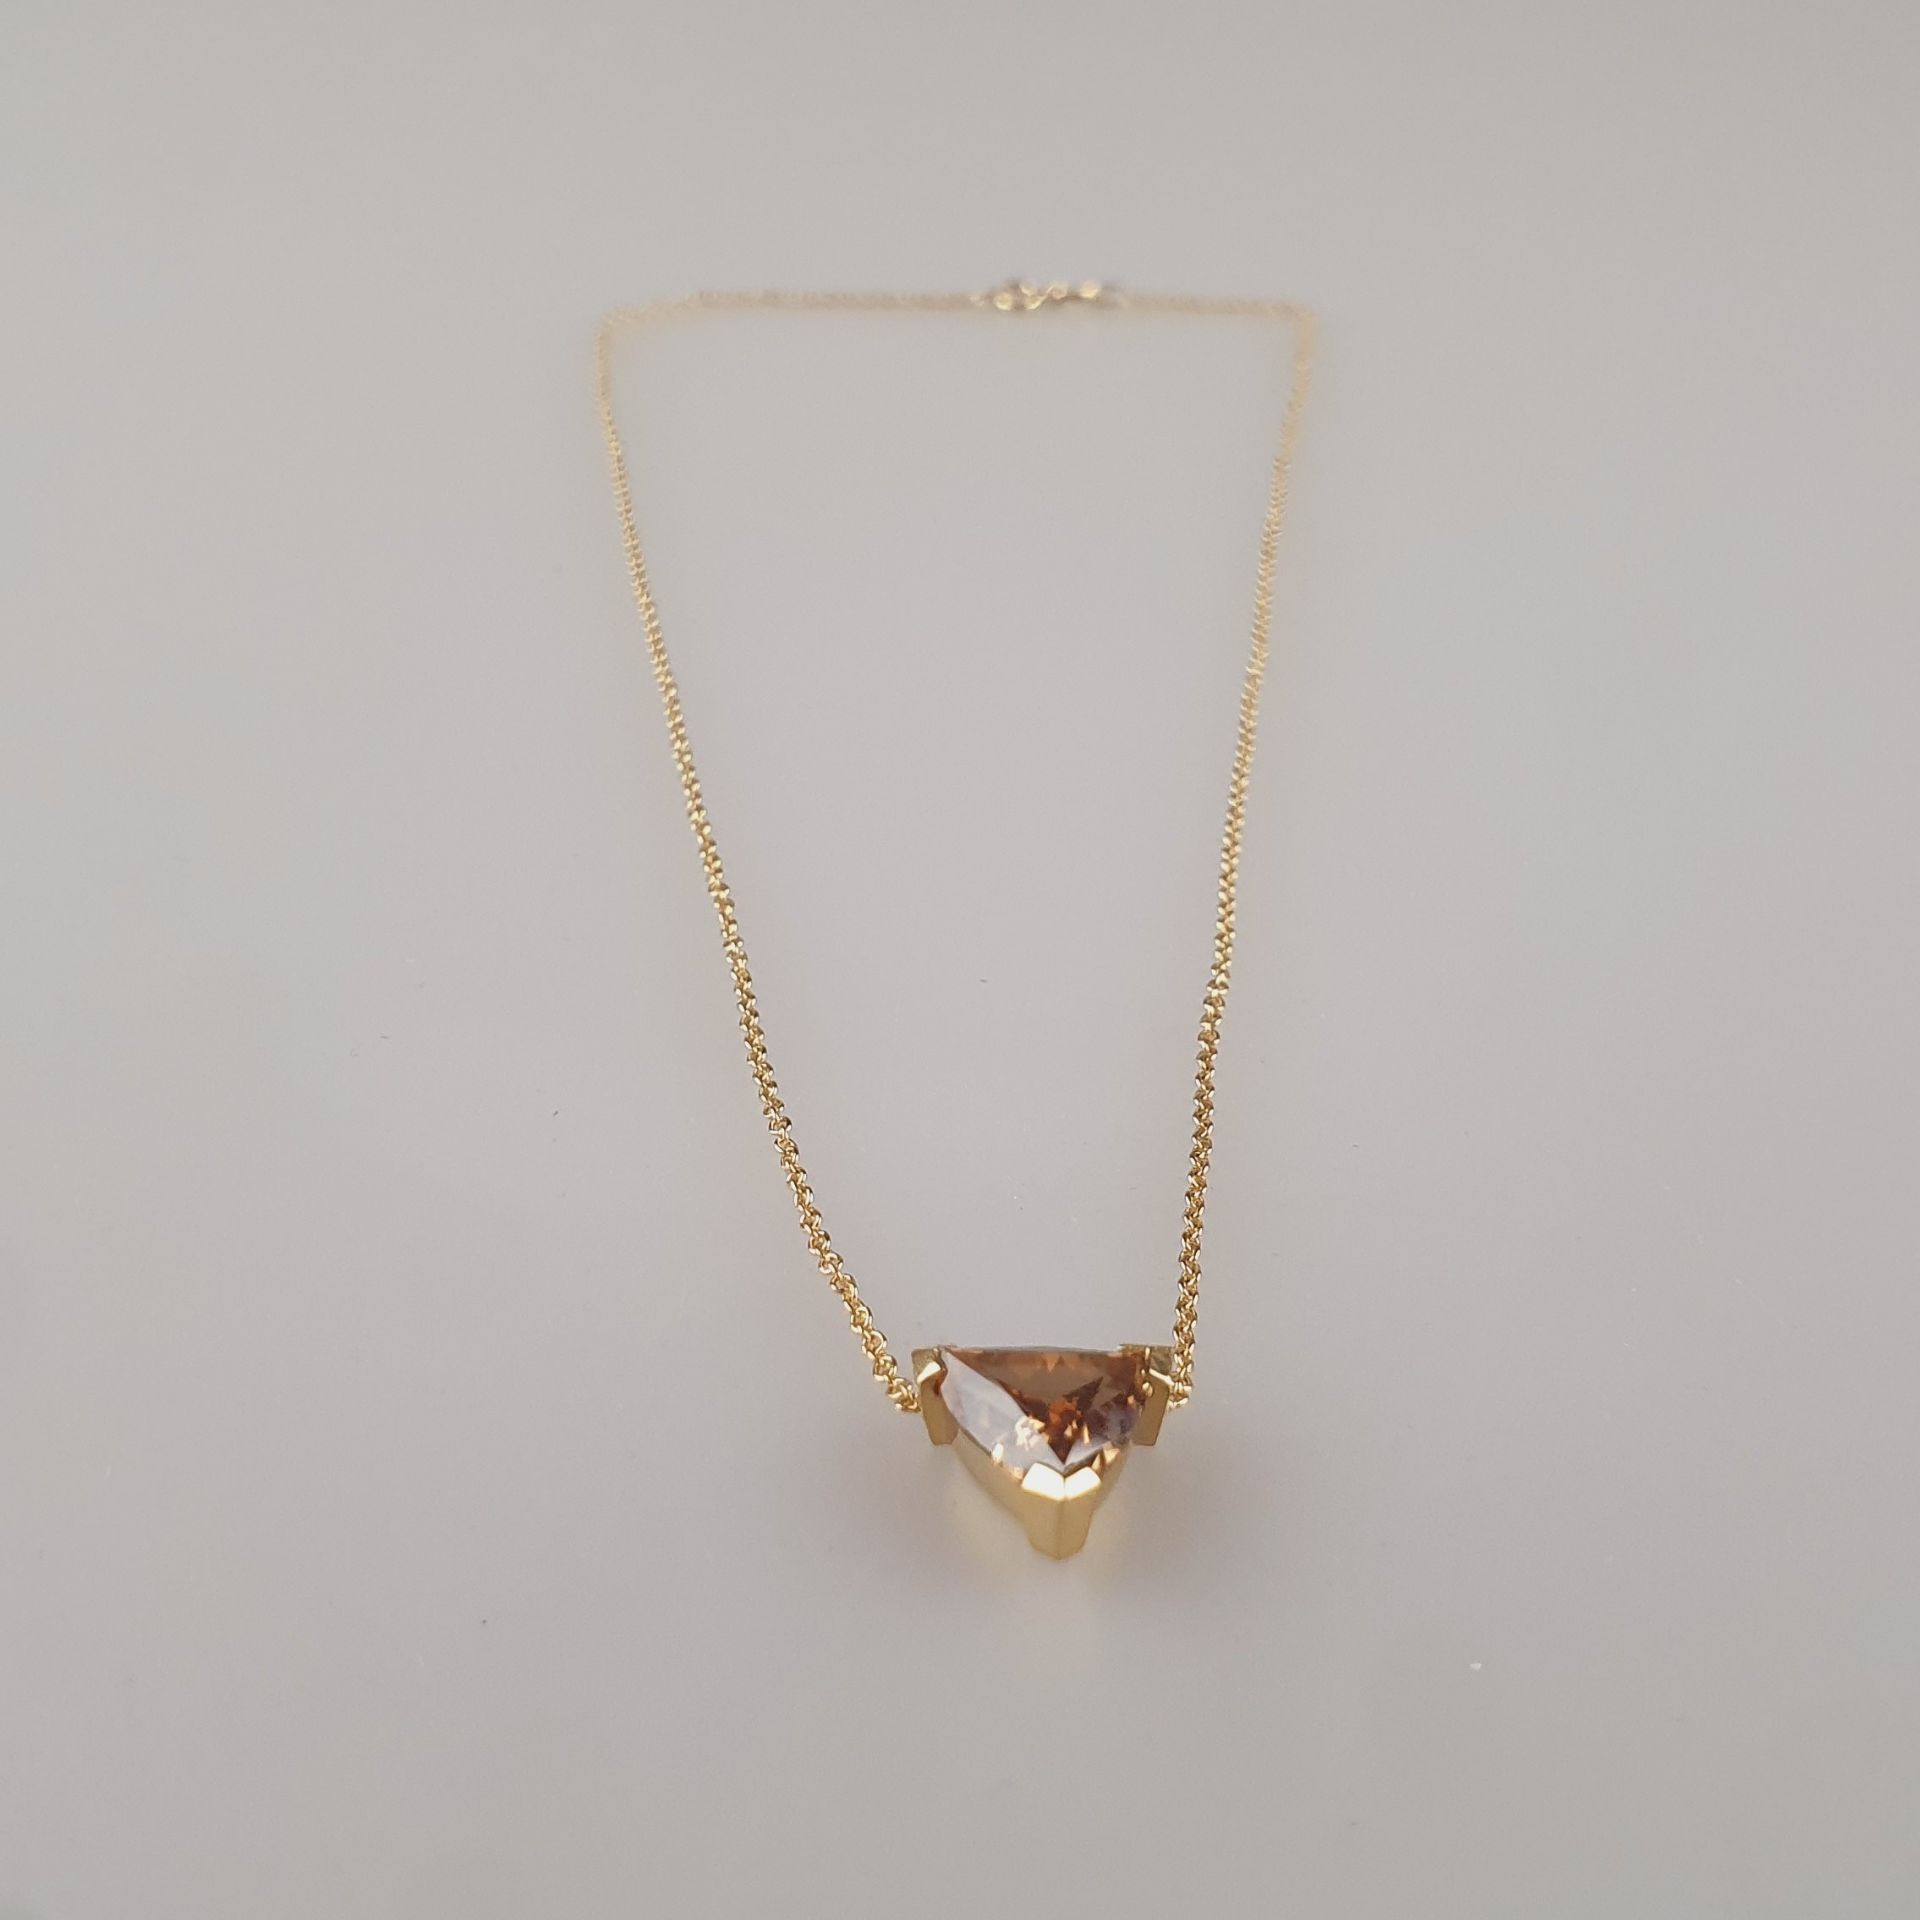 Diamantanhänger an zarter Kette - Gelbgold 750/000, gestempelt, Anhänger besetzt mit 1 Diamanten im - Image 7 of 9